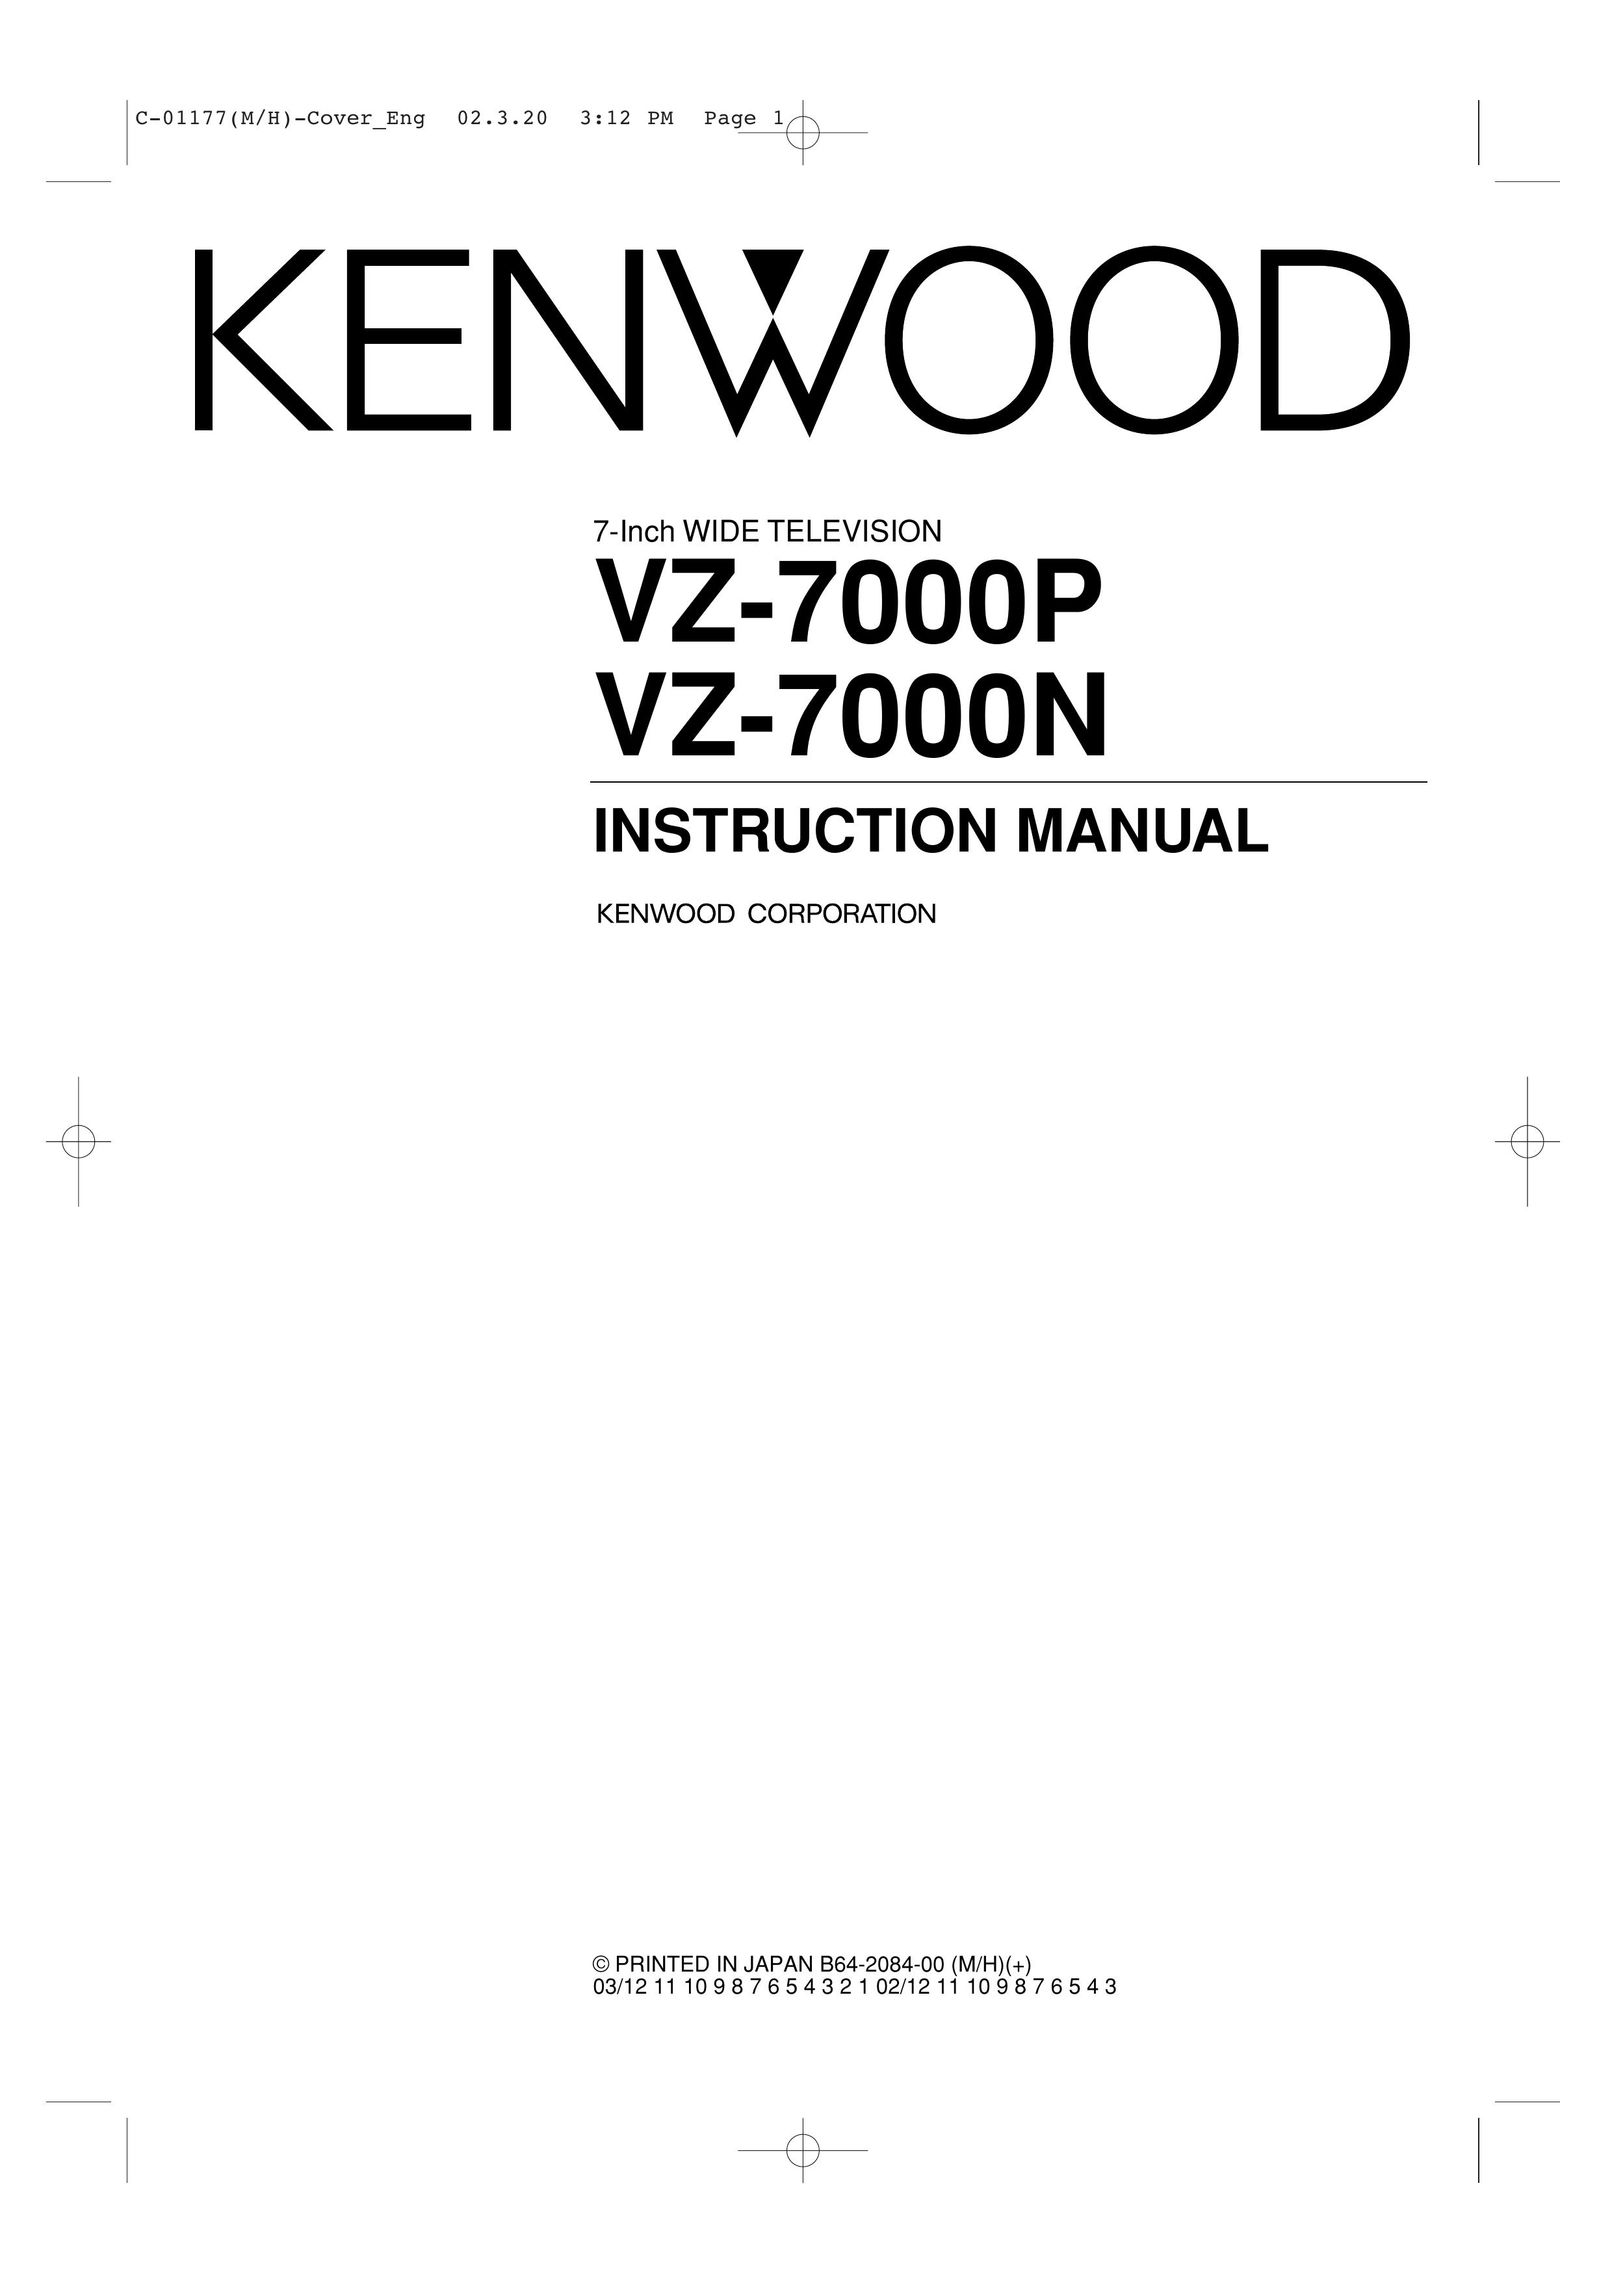 Kenwood VZ-7000P CRT Television User Manual